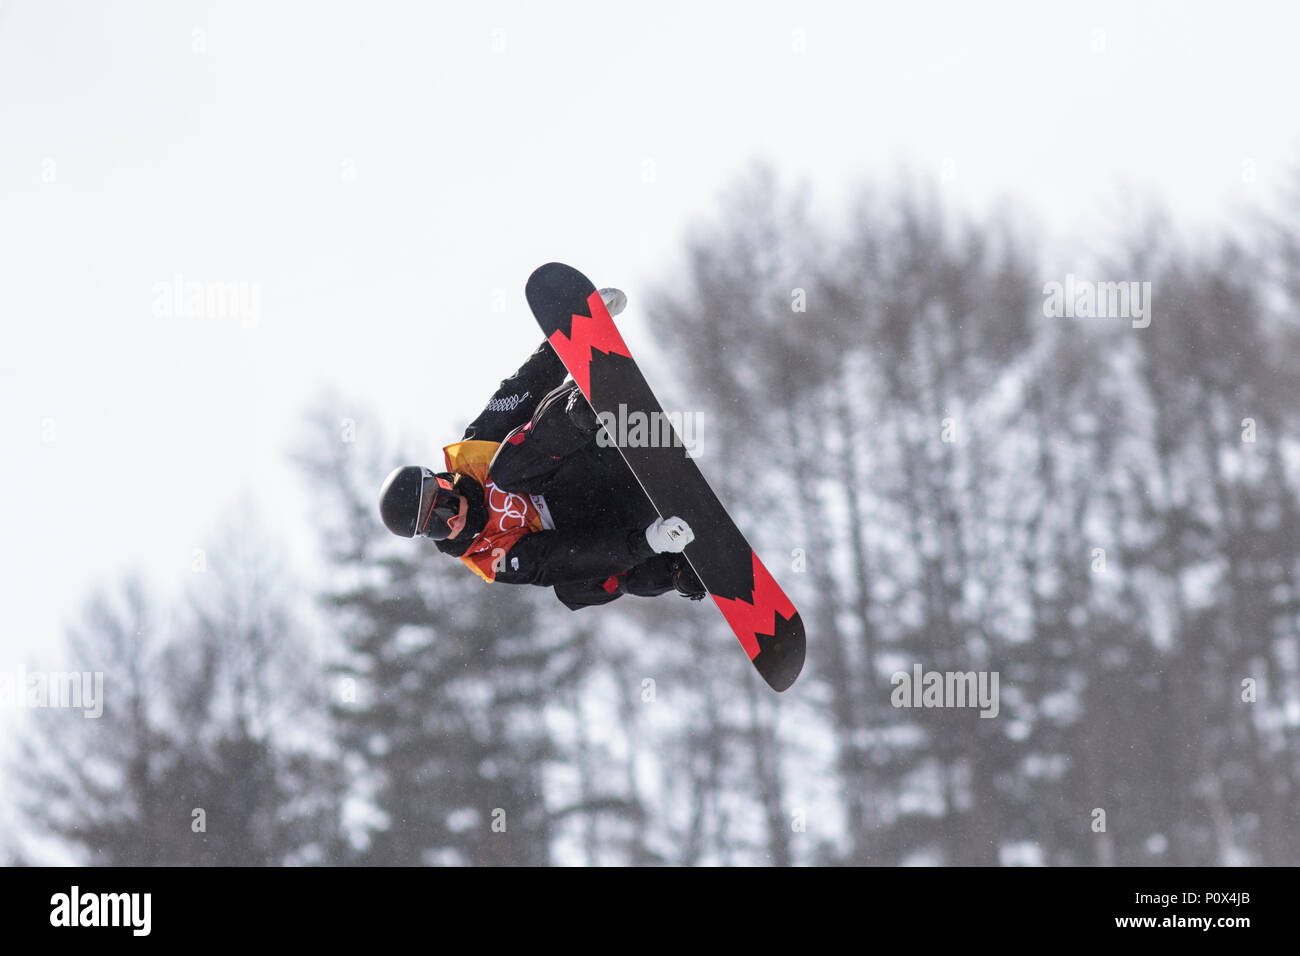 Rakai Tait (NZL) en compétition dans l'épreuve du snowboard Half Pipe la qualification aux Jeux Olympiques d'hiver de PyeongChang 2018 Banque D'Images